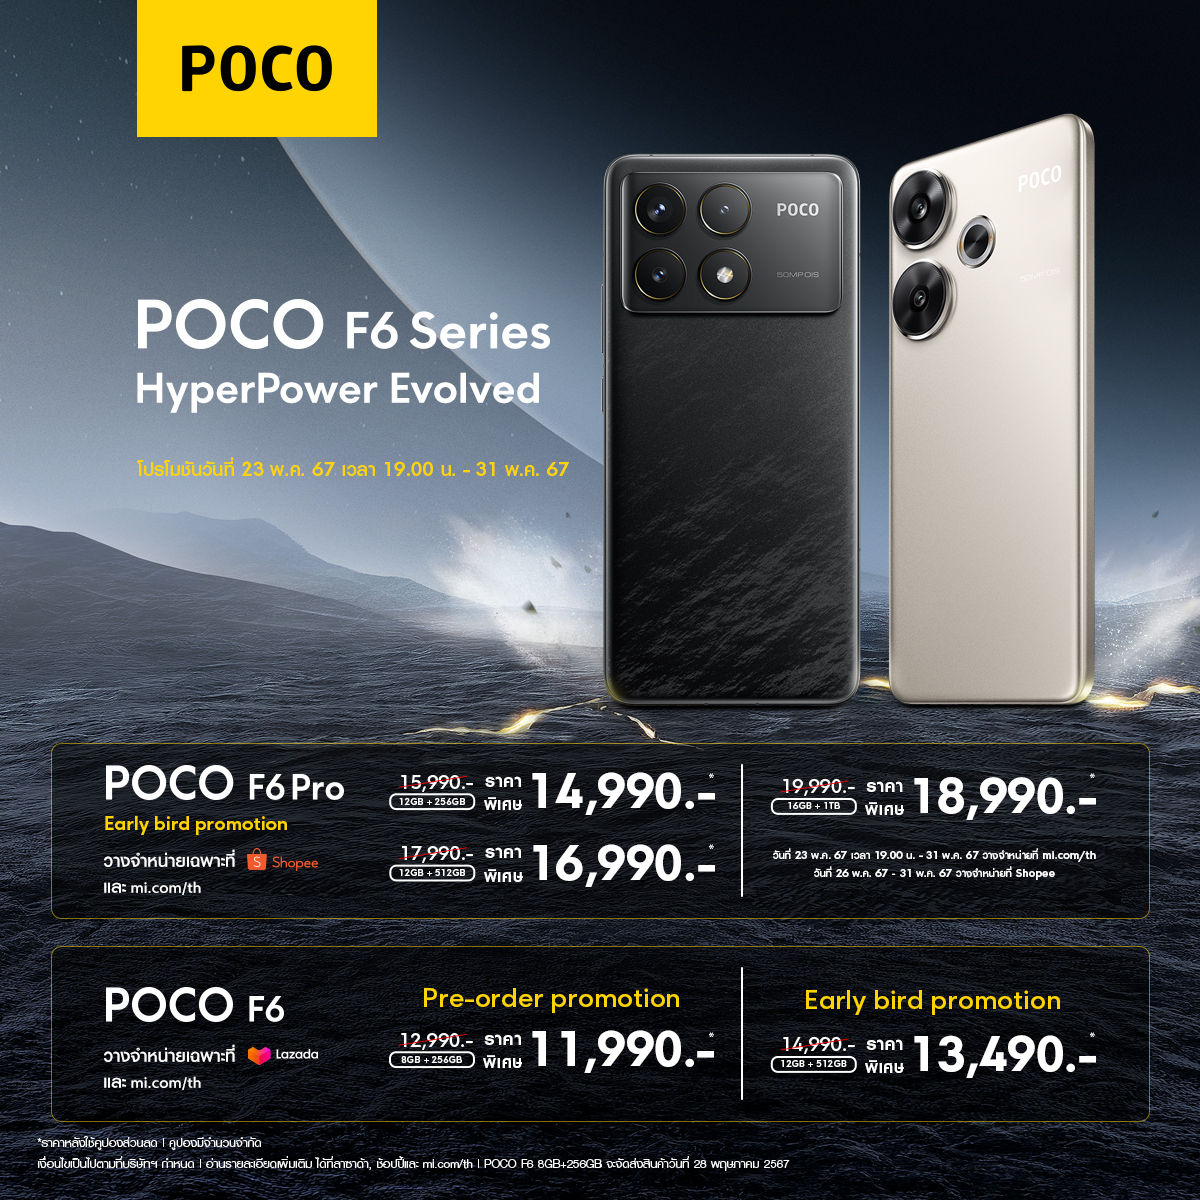 POCO เปิดตัวสมาร์ทโฟนเรือธงรุ่นล่าสุด ‘POCO F6 Series’ กับ POCO F6 Pro และ POCO F6 เป็นเจ้าของได้แล้ววันนี้!